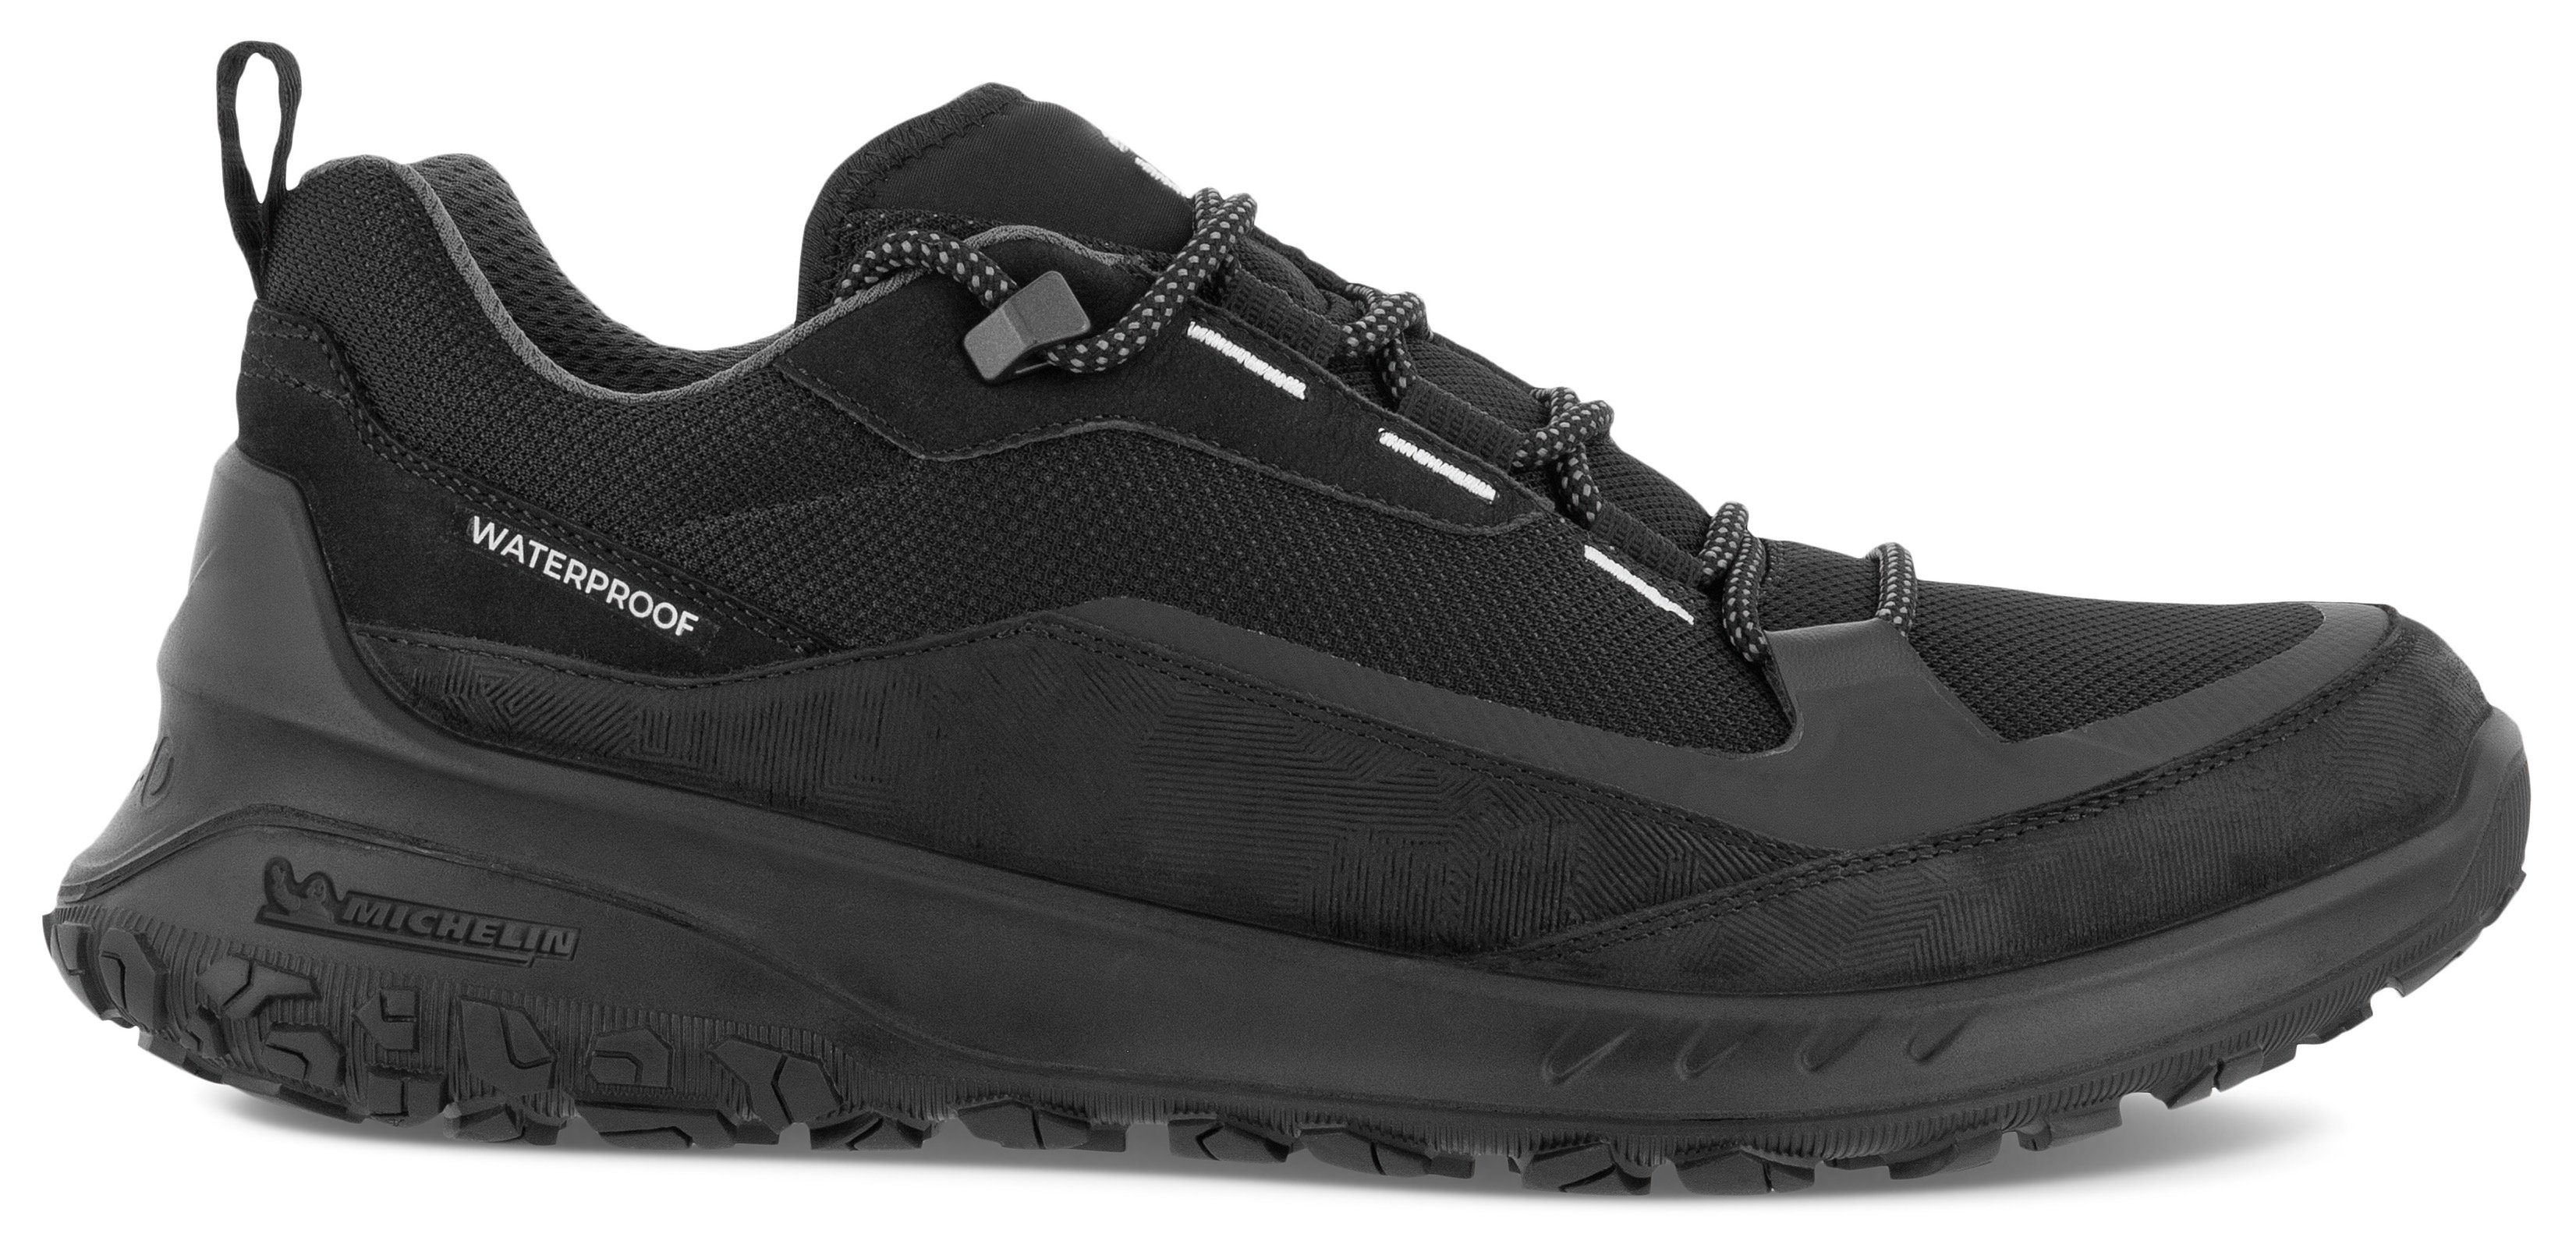 Ecco ULT-TRN M Sneaker mit Laufsohle Michelin-Technologie schwarz sportive